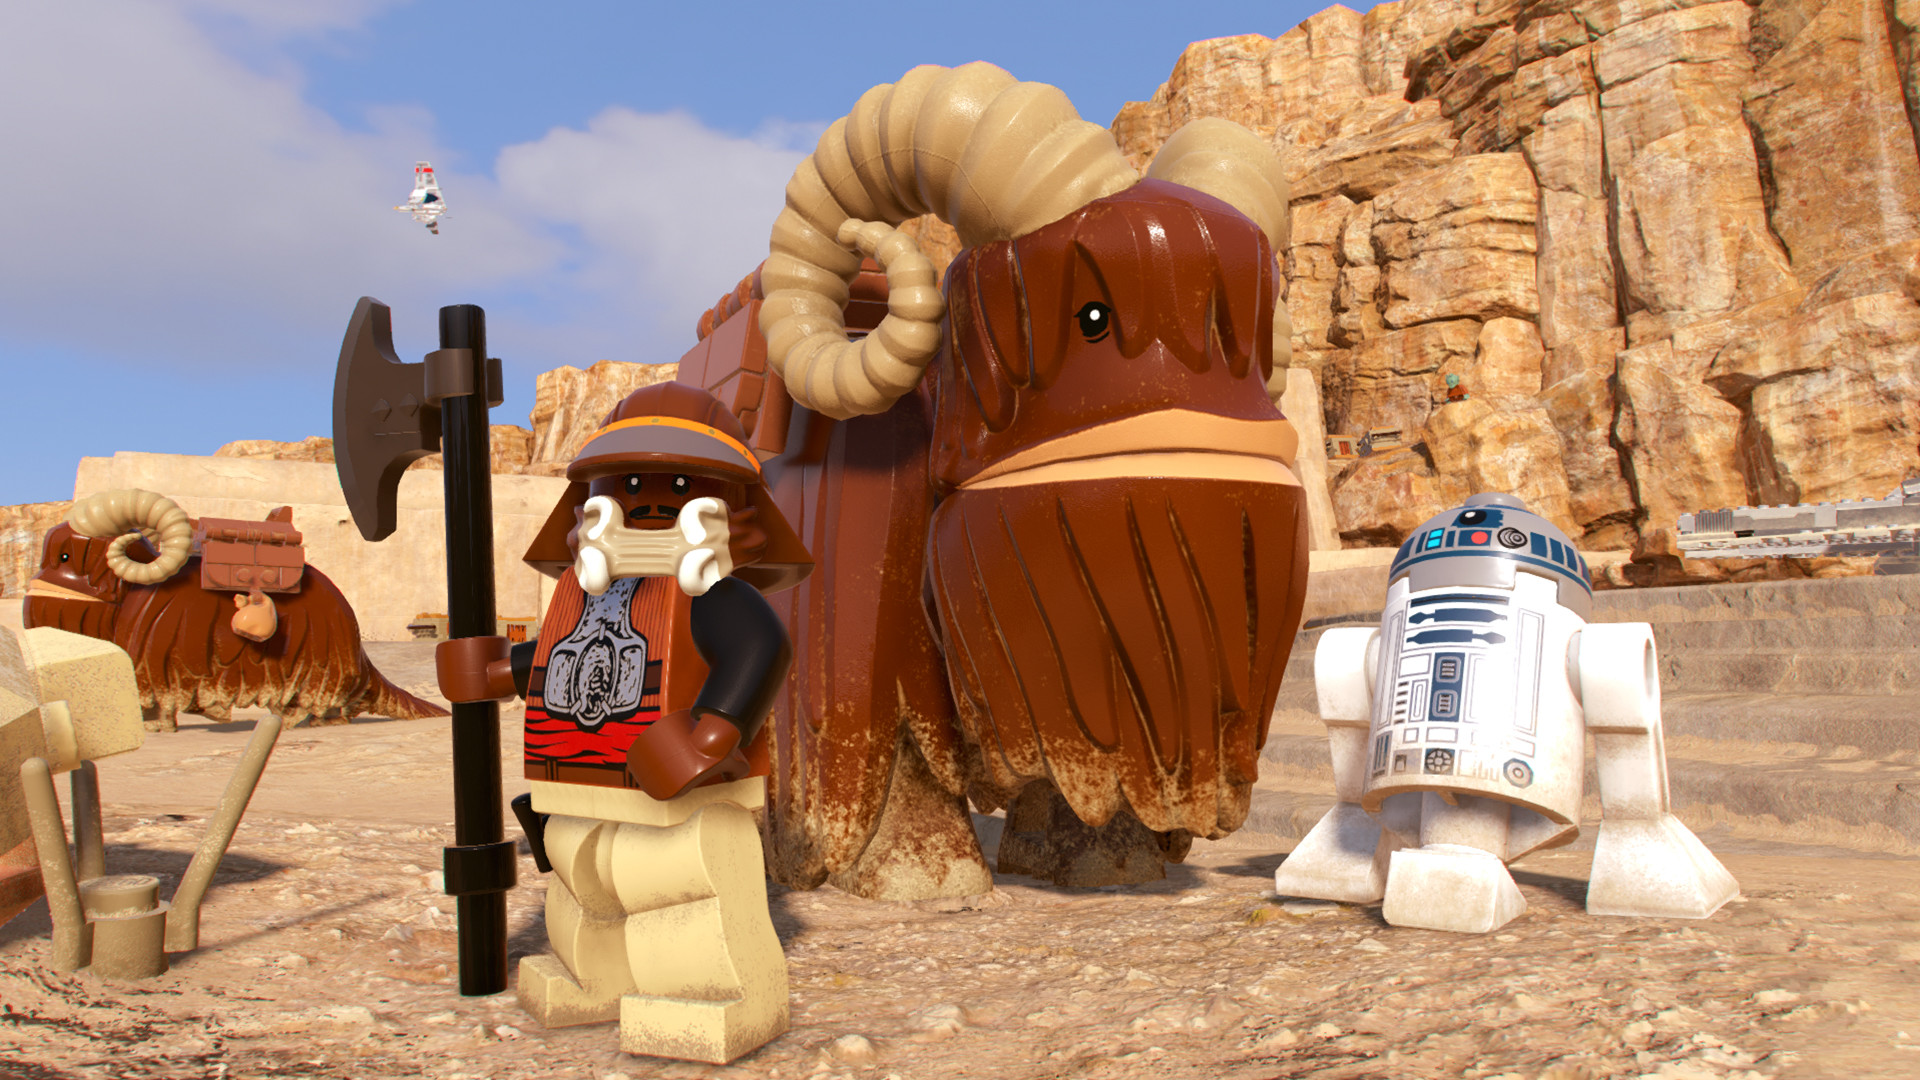 Does LEGO Star Wars: The Skywalker Saga Have Online Co-Op?